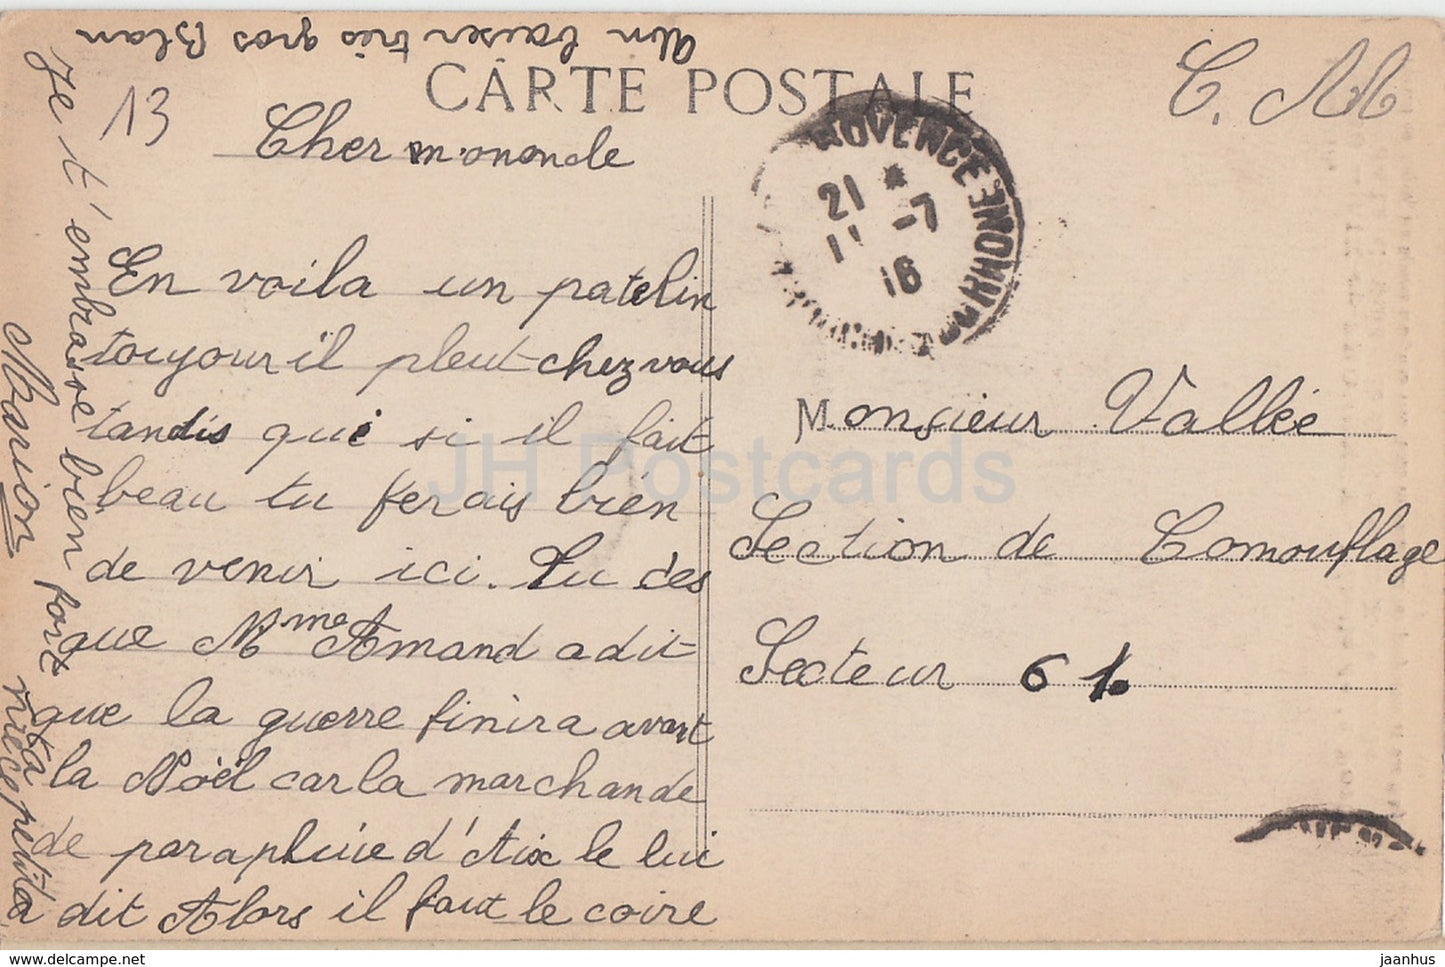 Aix en Provence - Details de la Porte de la Cathedrale St Sauveur - 2490 - alte Postkarte - 1916 - Frankreich - gebraucht